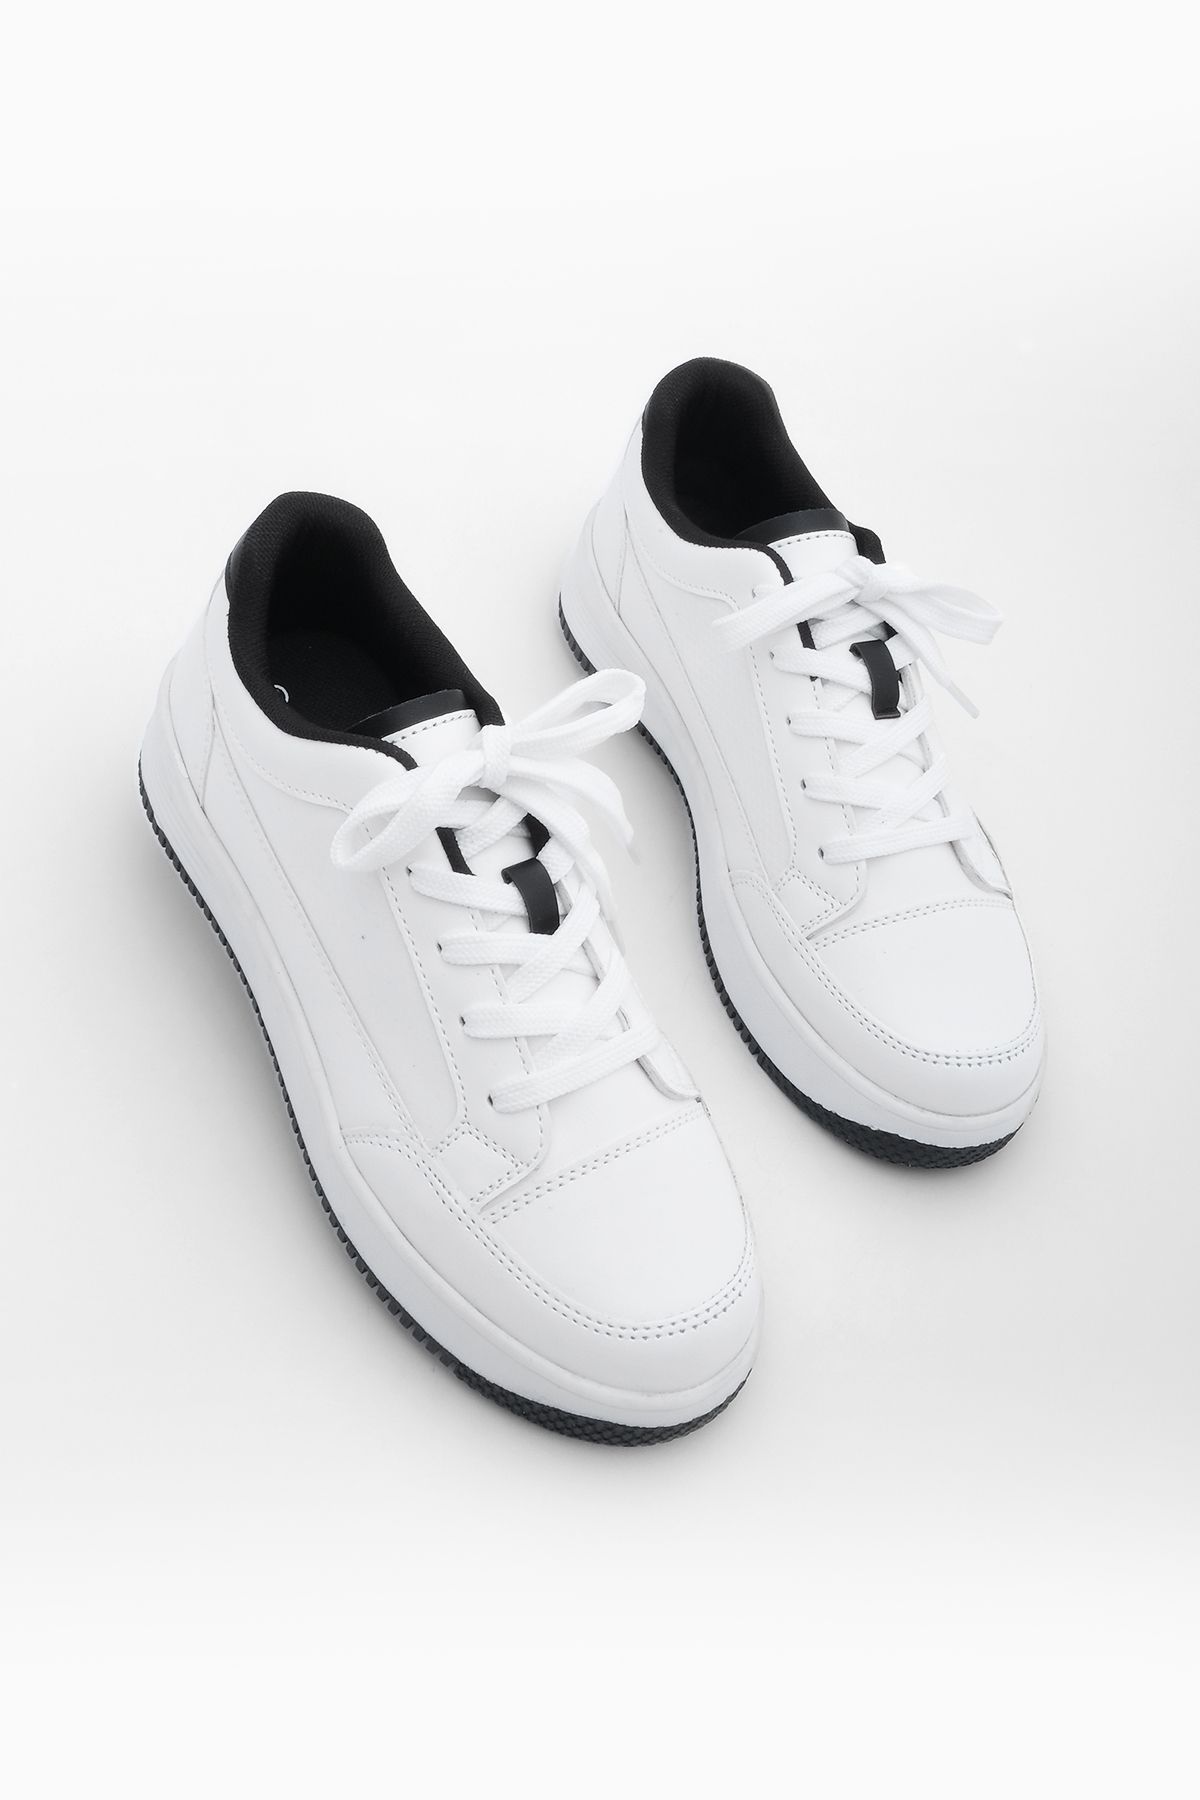 Marjin Kadın Sneaker Bağcıklı Spor Ayakkabı Arye Beyaz